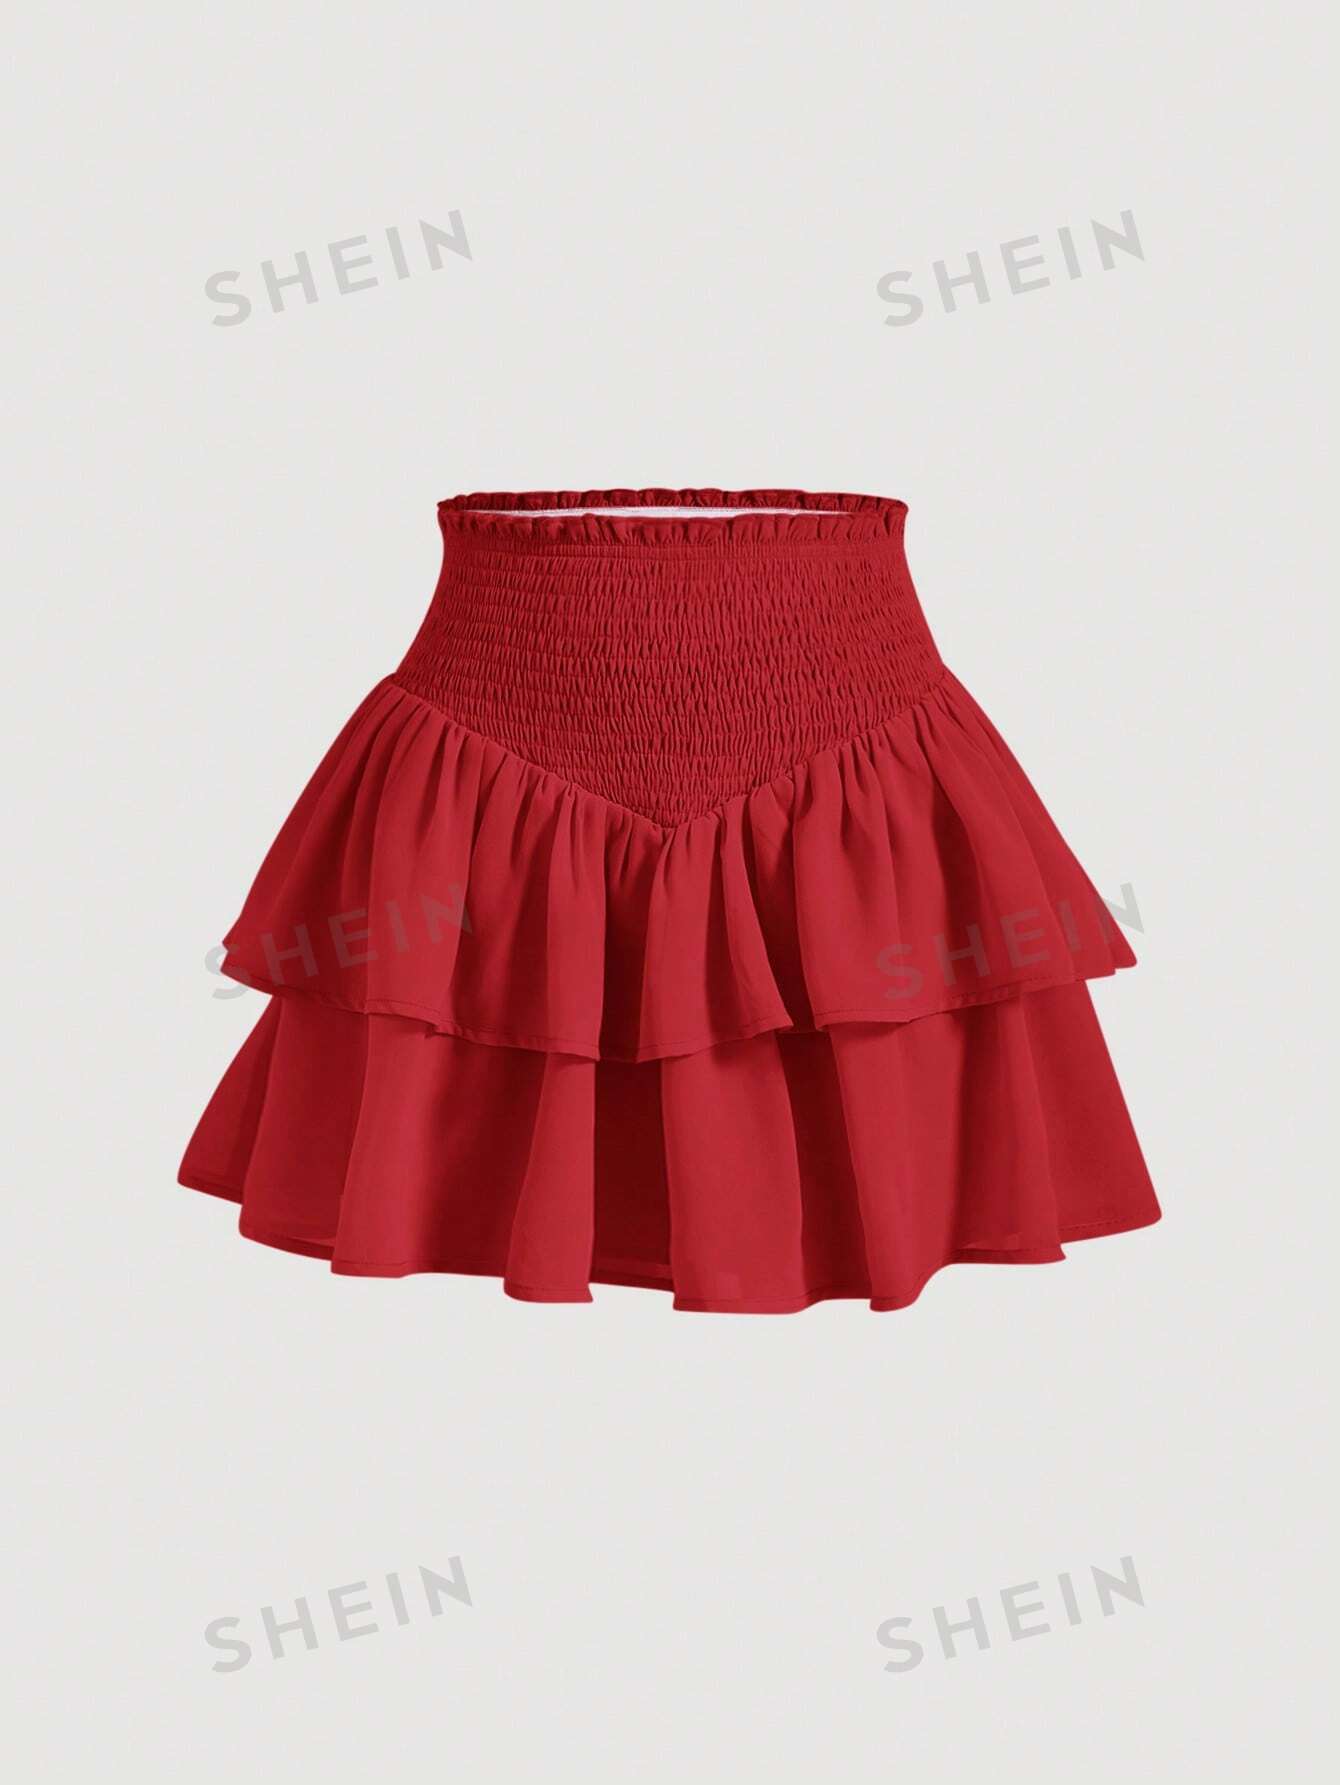 SHEIN MOD SHEIN MOD женская двухслойная мини-юбка с асимметричным подолом и рюшами и присборенной талией, красный юбка в стиле харадзюку с завышенной талией летняя повседневная готическая юбка трапеция с асимметричным подолом новая модная одежда для р